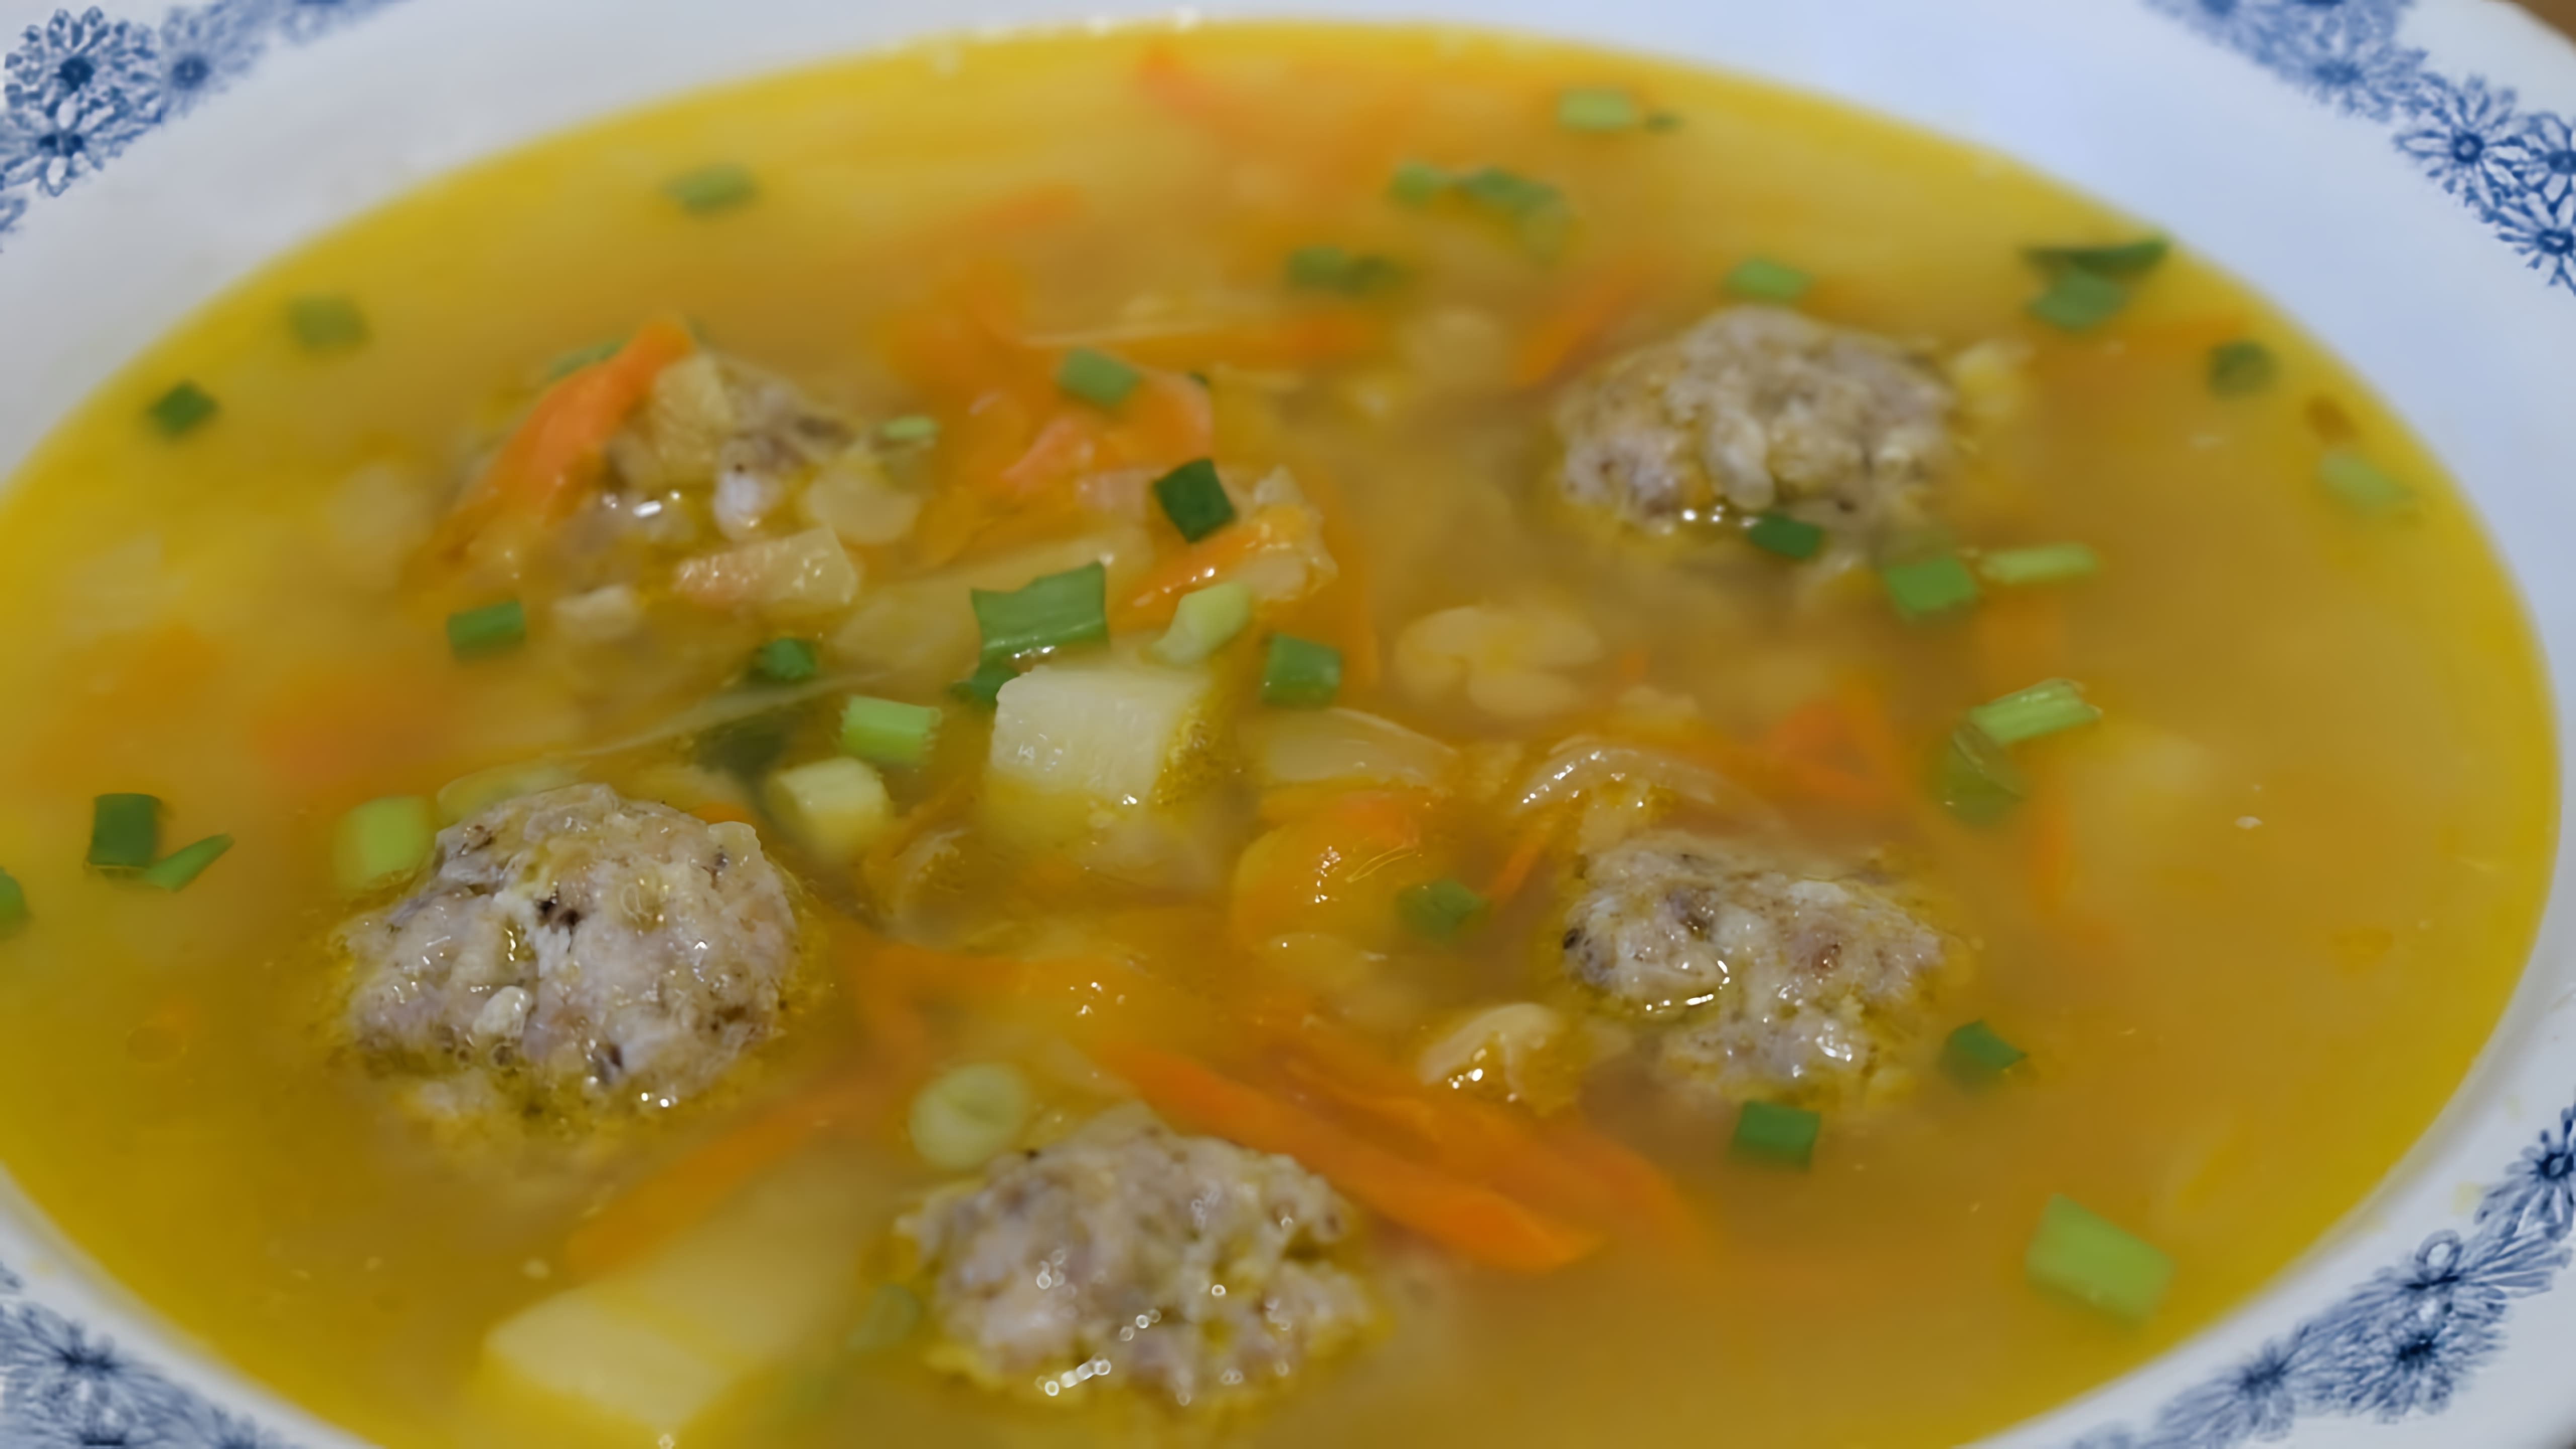 В этом видео демонстрируется процесс приготовления горохового супа с фрикадельками